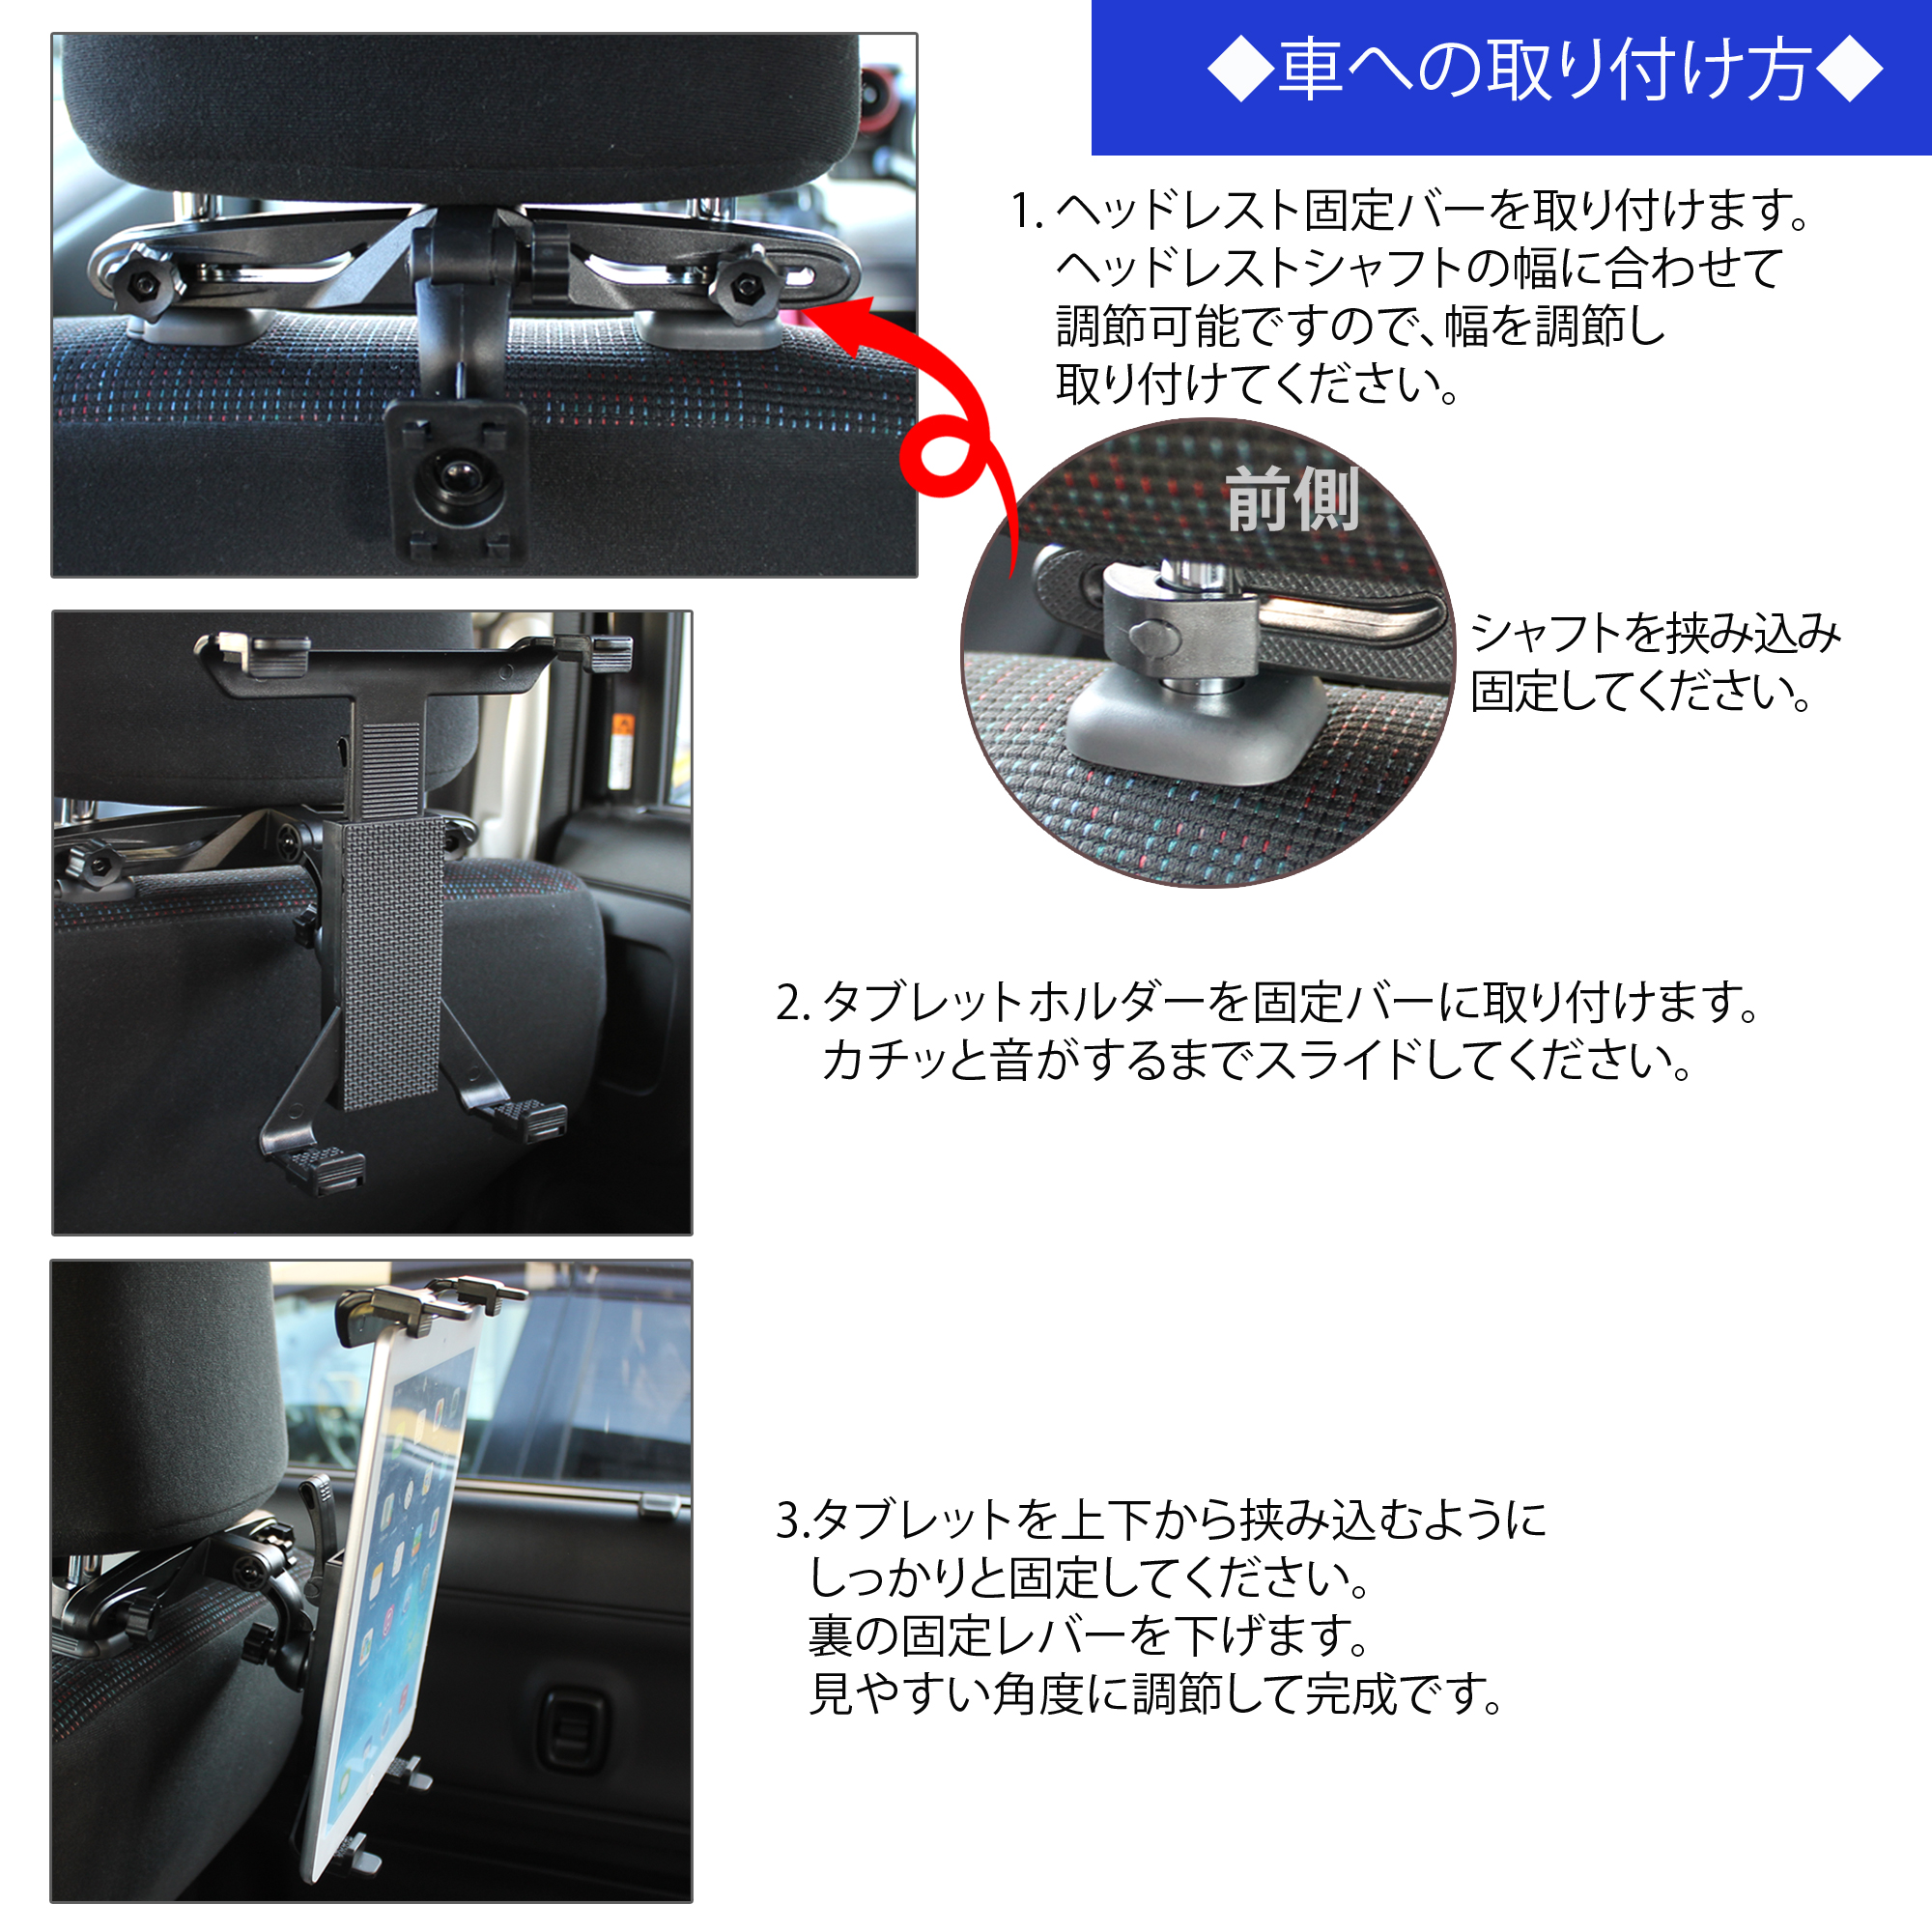 興奮する 流行している 提供する 車 ヘッドレスト タブレット ホルダー 21seikinoie Jp